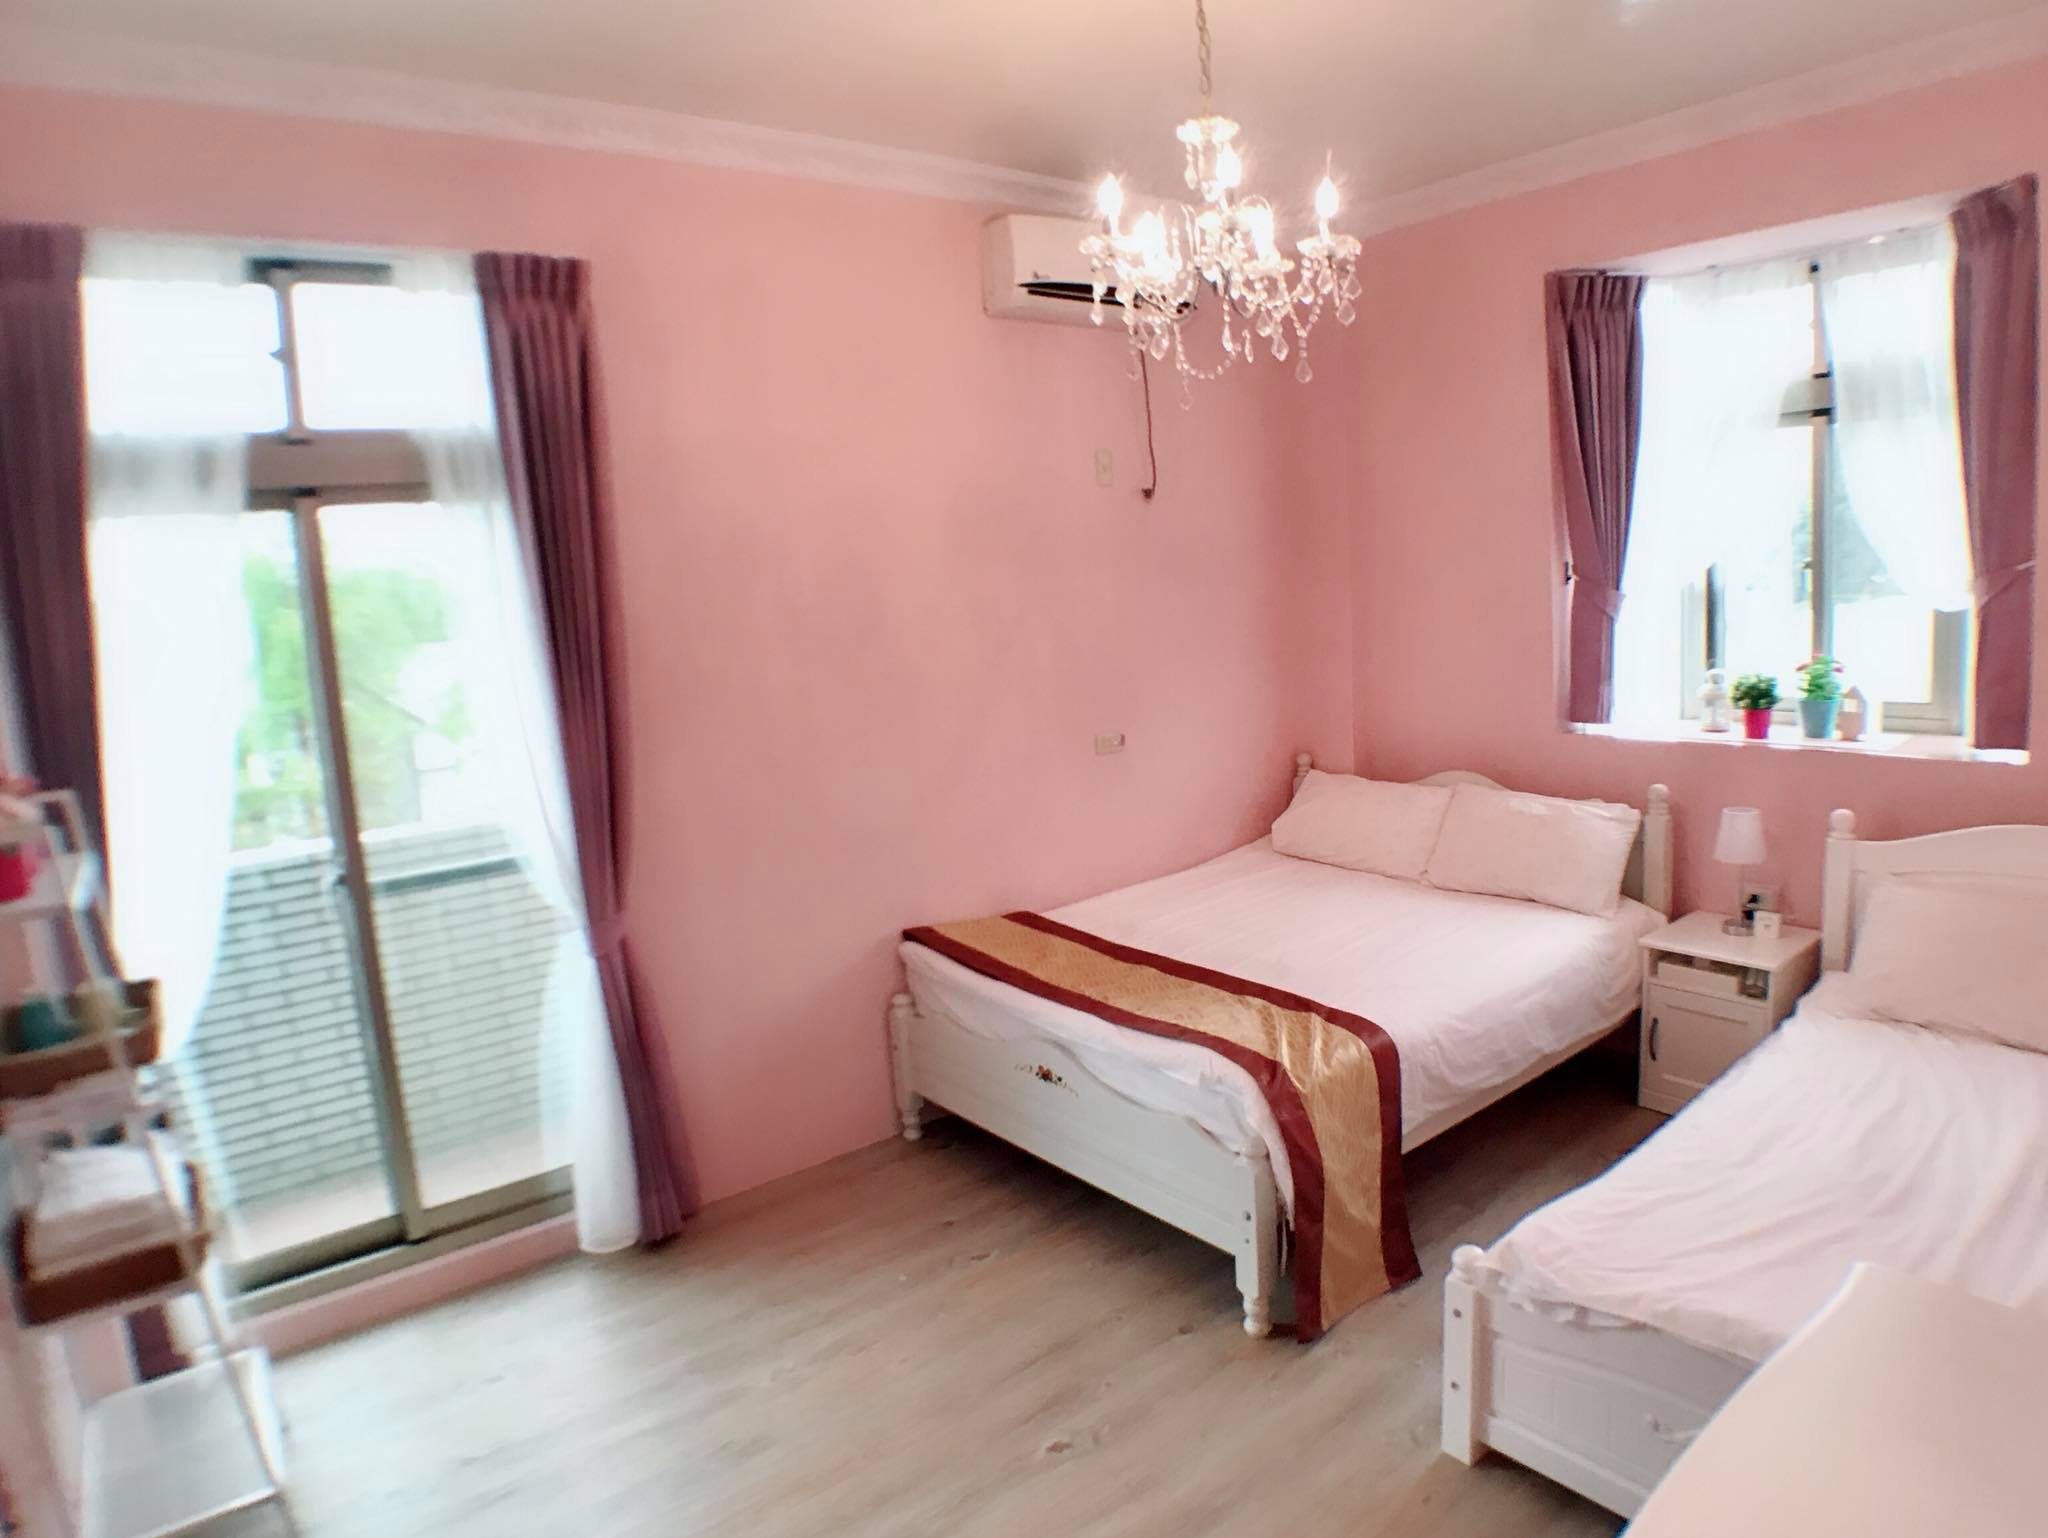 203房間雙面採光,附有觀景陽台,以唯美的粉紅色為主體,搭配白色的歐風家具,浪漫清新的風格,讓人感覺像戀愛般的甜蜜~